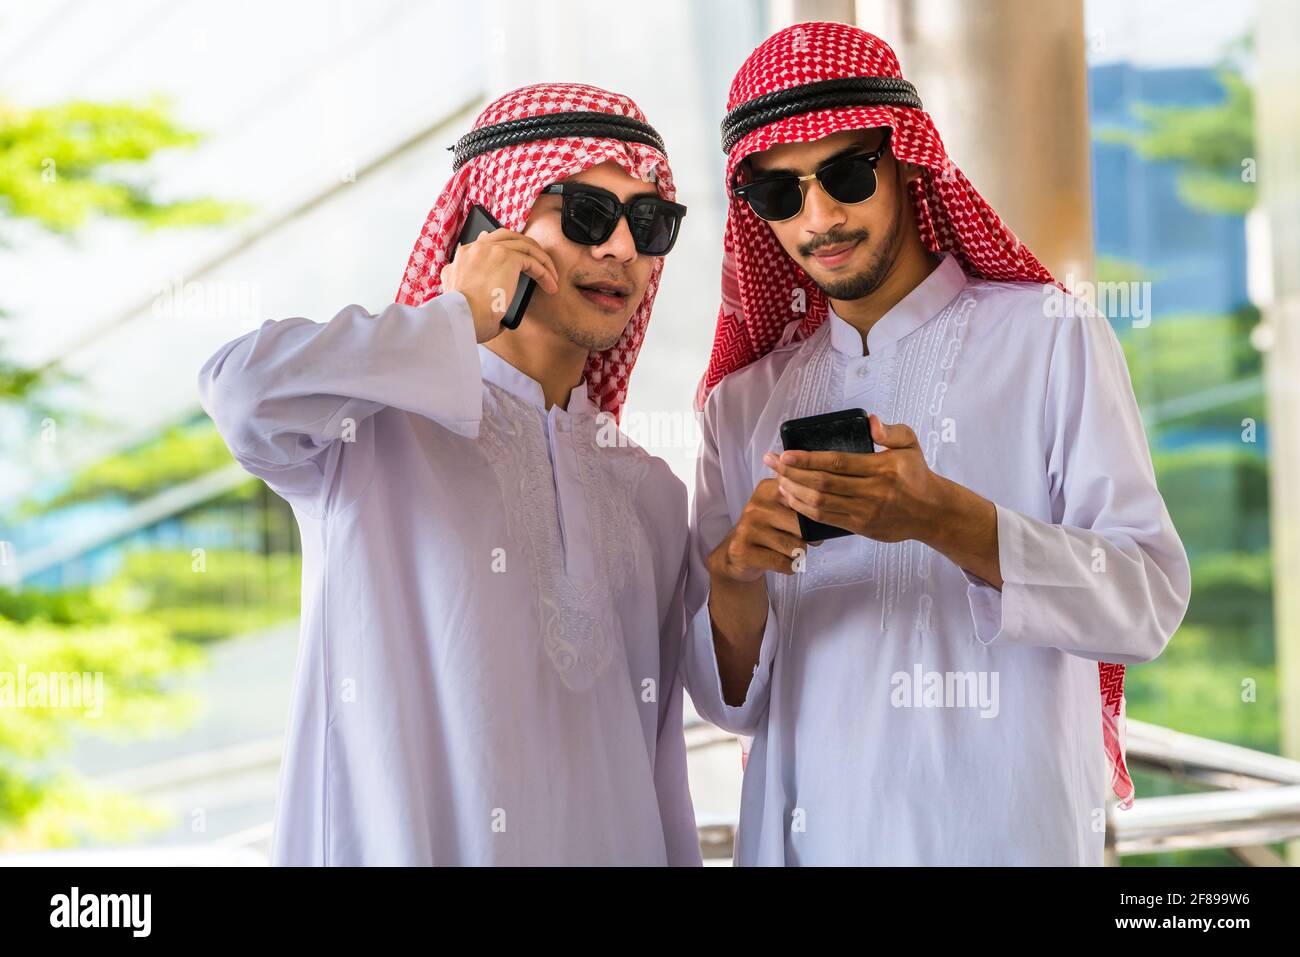 Телефон арабов. Два араба. Араб с телефоном. Арабские мужчины. Арабы несколько.